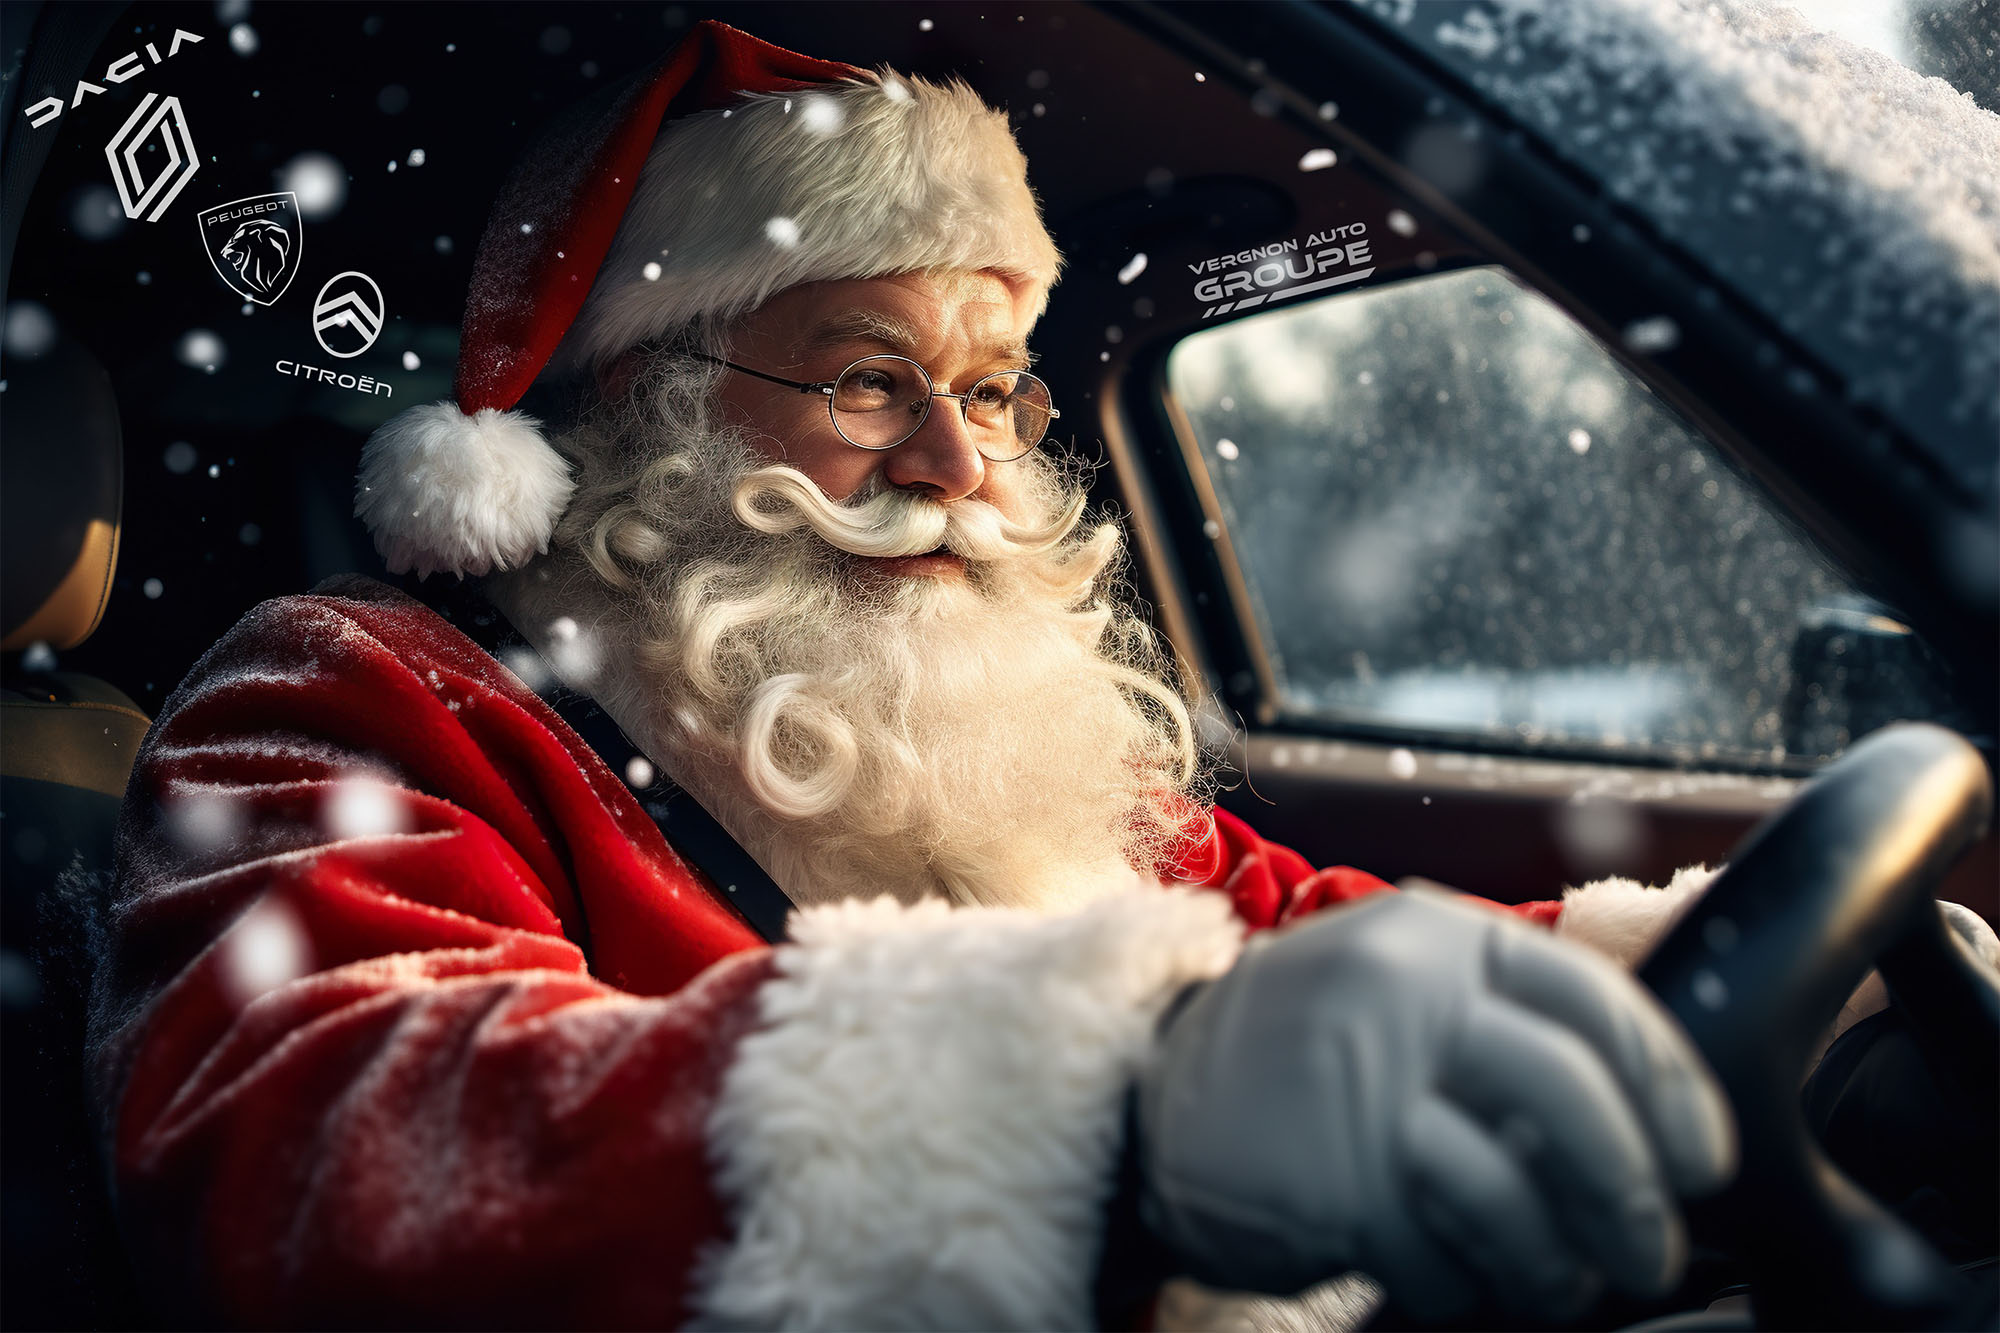 Lorsque le père Noël se fait un cadeau, il va chez Vergnon Auto !